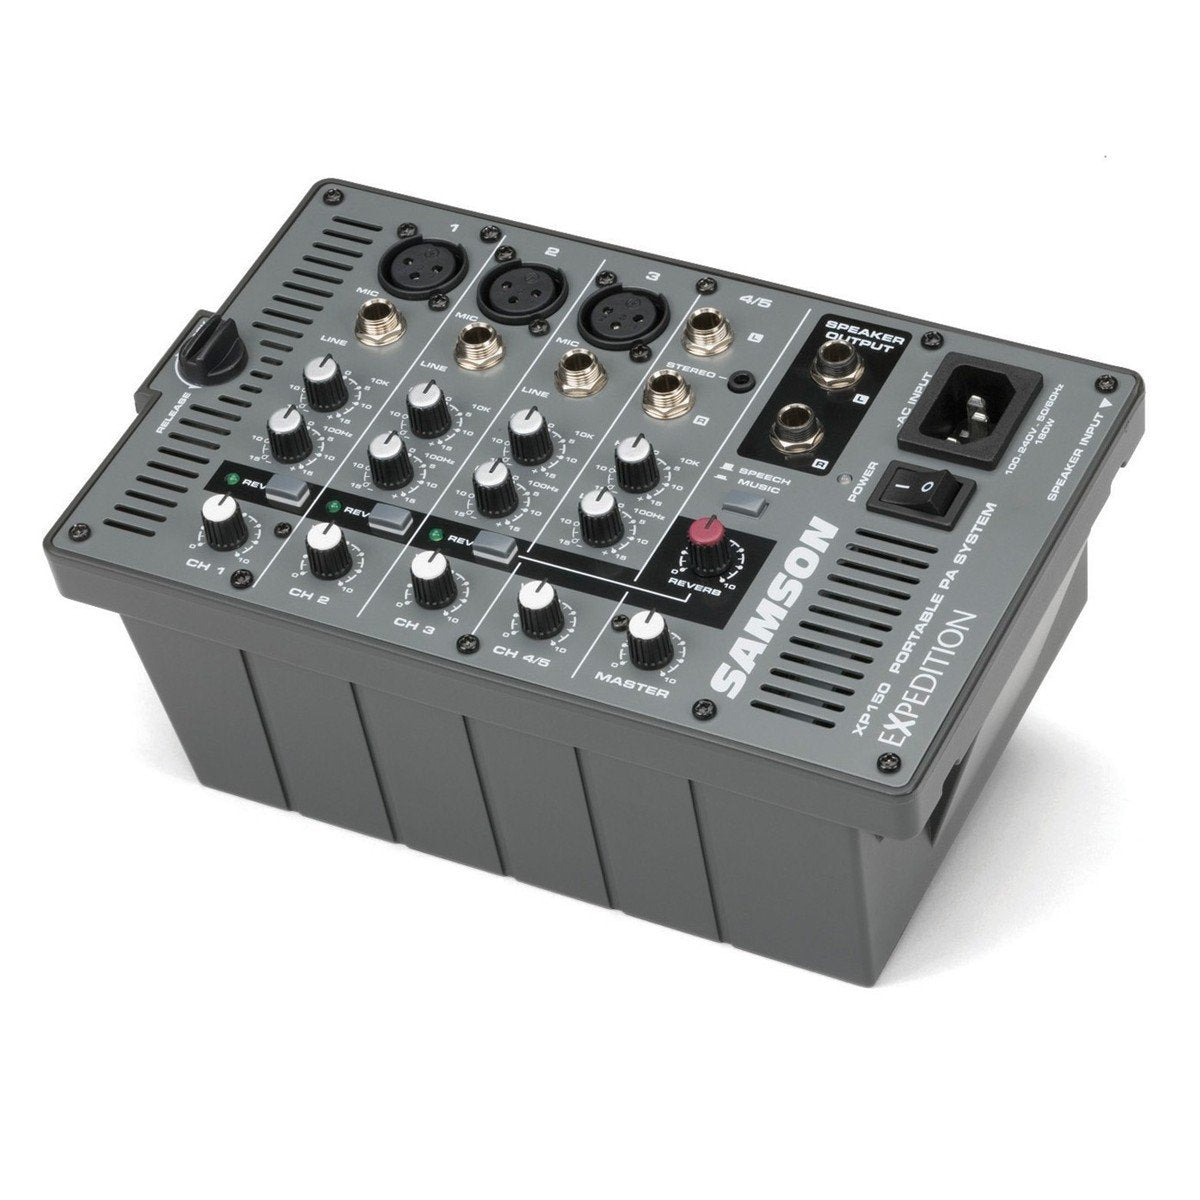 SAMSON XP 150 150W RMS (2x75W) Portable p.a. systems - DY Pro Audio